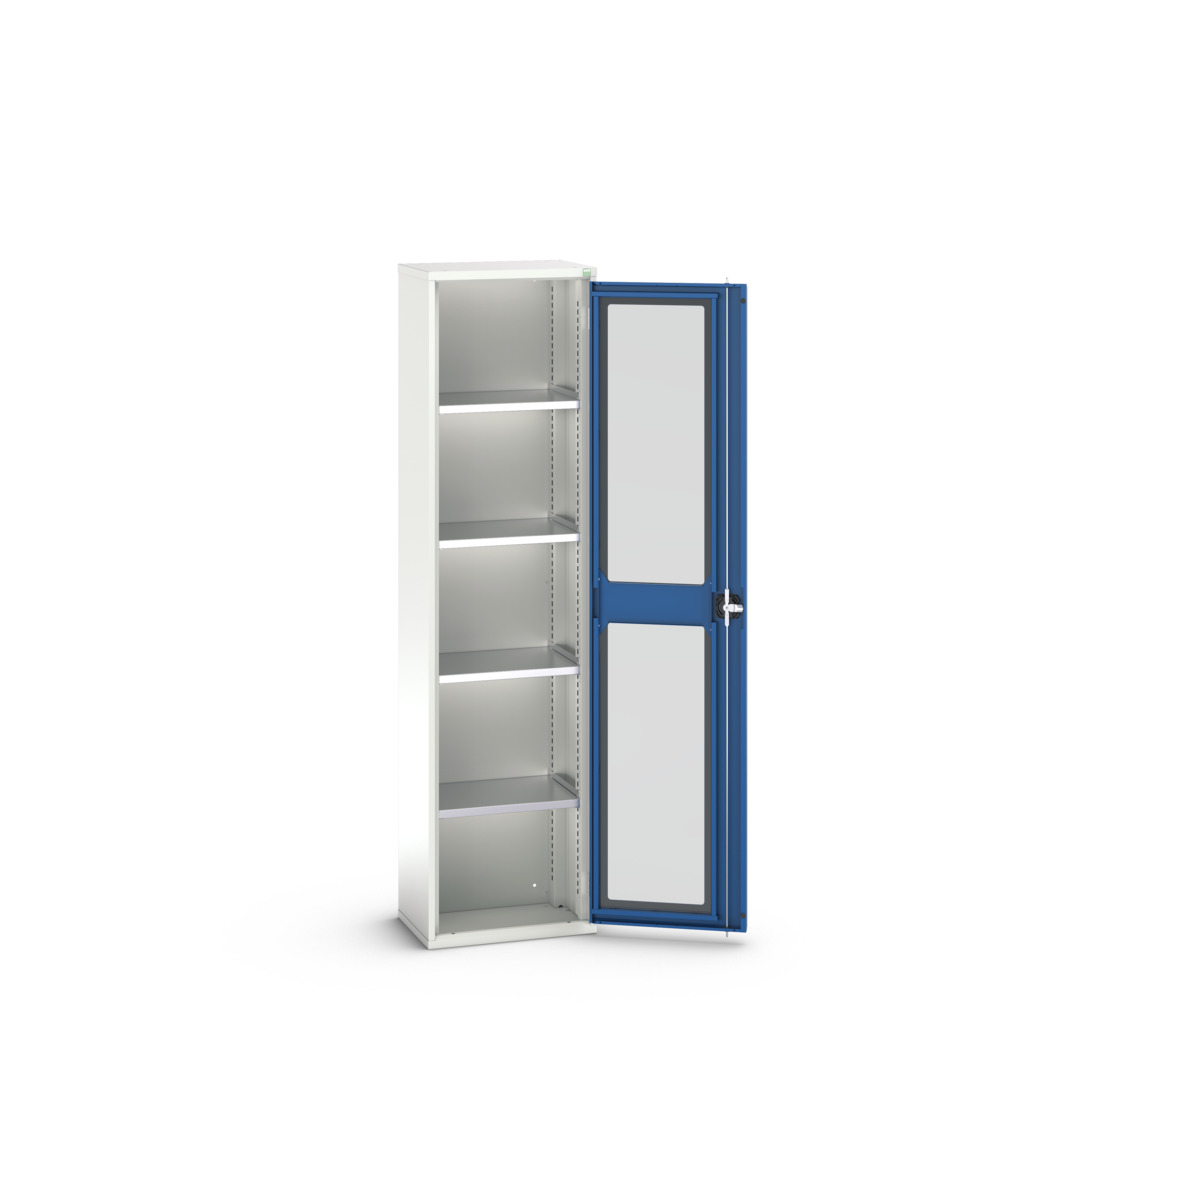 16926073.11 - verso window door cupboard